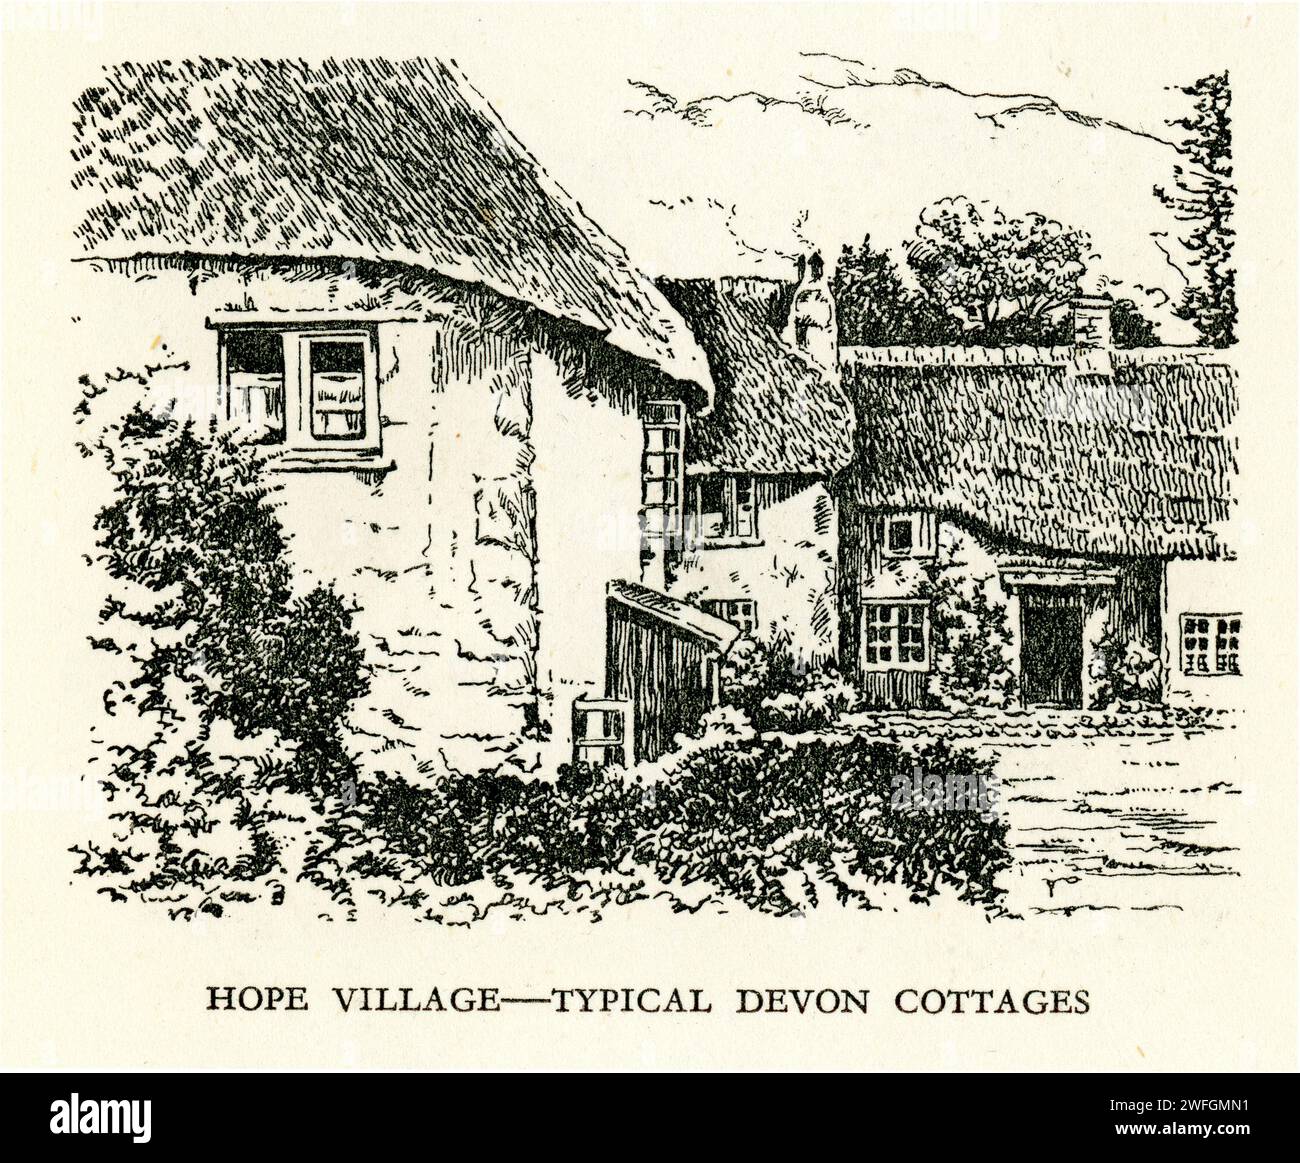 Schizzo a penna e inchiostro - Hope Village - tipico cottage del Devon. Dal libro Glorious Devon. Di S.P.B. Mais, pubblicato da London Great Western Railway Company, 1928 Foto Stock